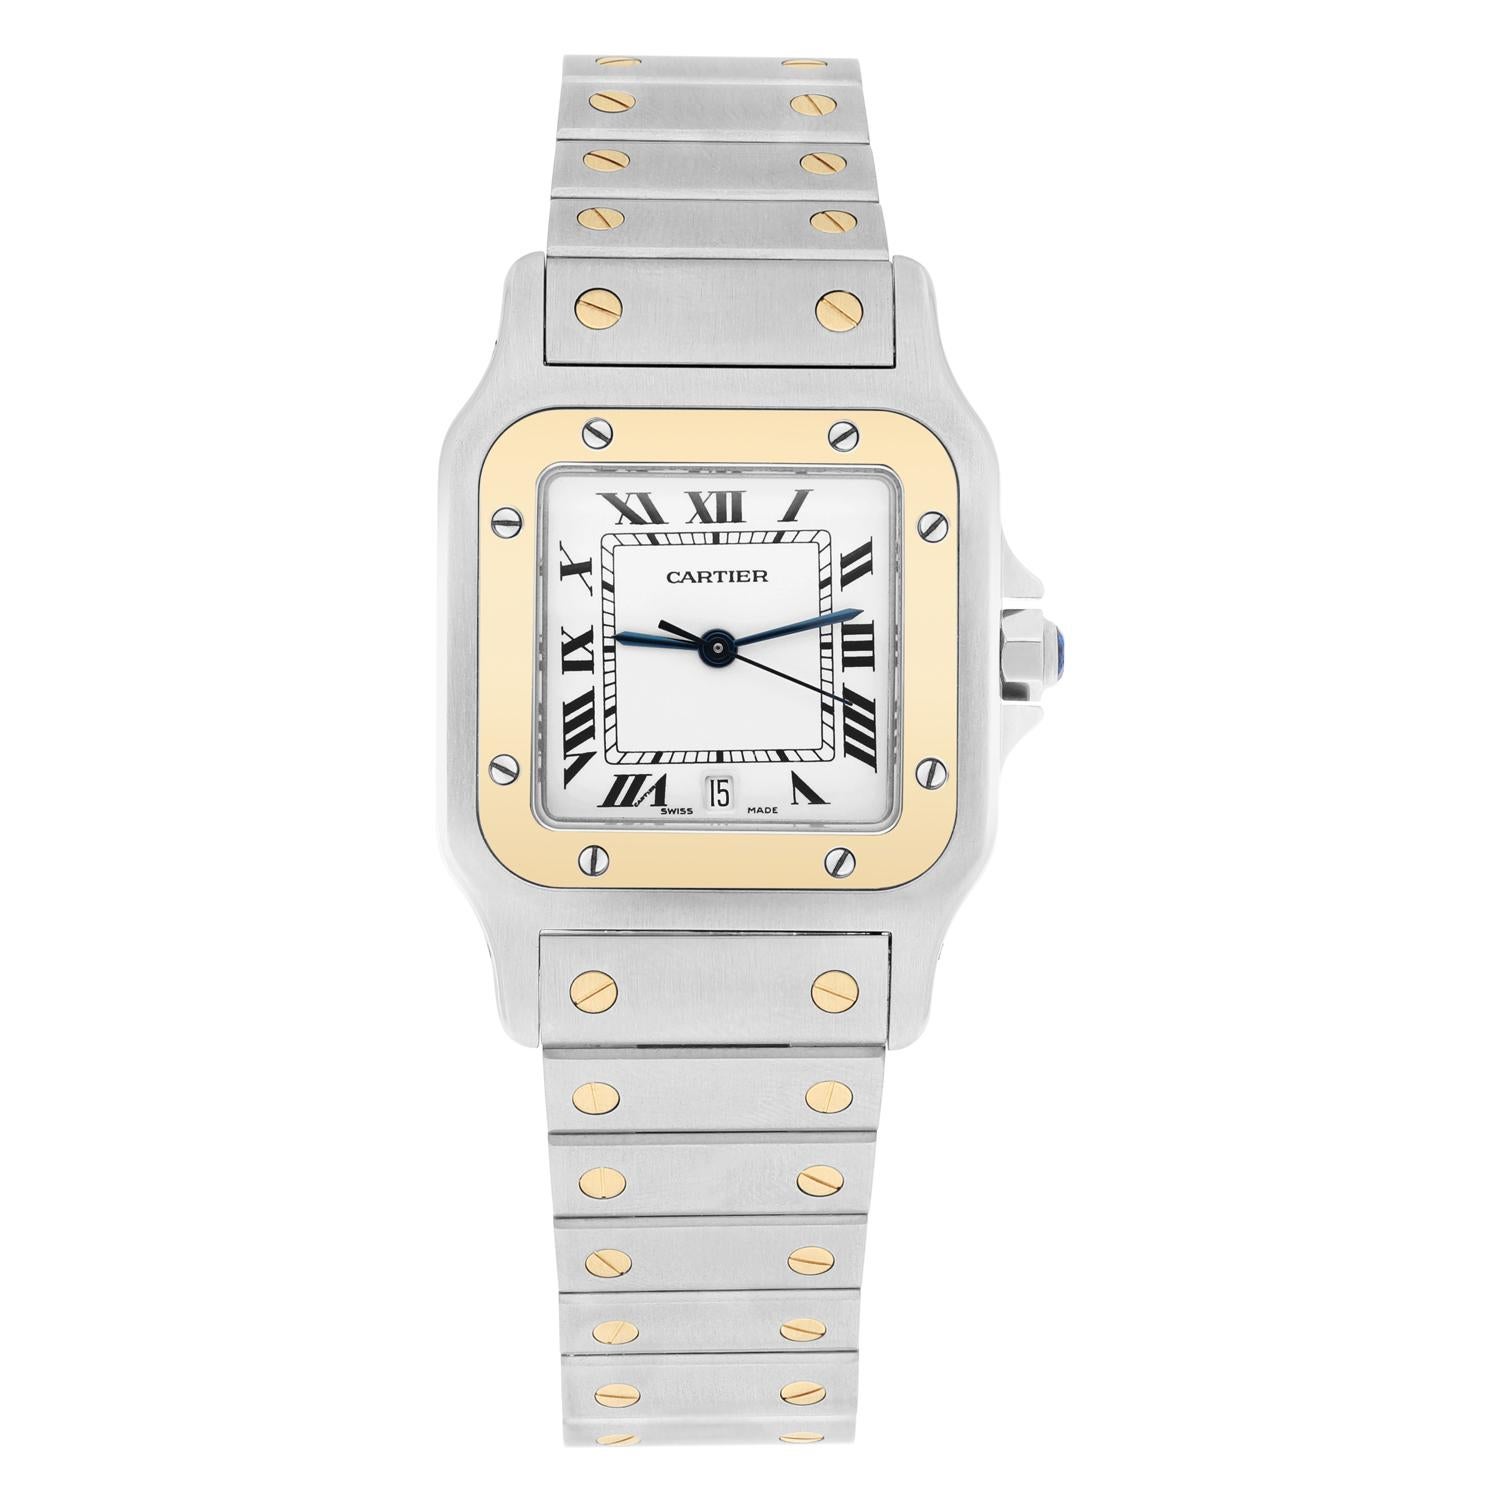 Erhöhen Sie Ihren Stil mit dieser atemberaubenden Cartier Santos Galbee Armbanduhr. Dieser luxuriöse Zeitmesser aus hochwertigem Edelstahl und elegantem Gelbgold verfügt über eine feste Lünette in kräftigem Gelb und römische Ziffern auf einem